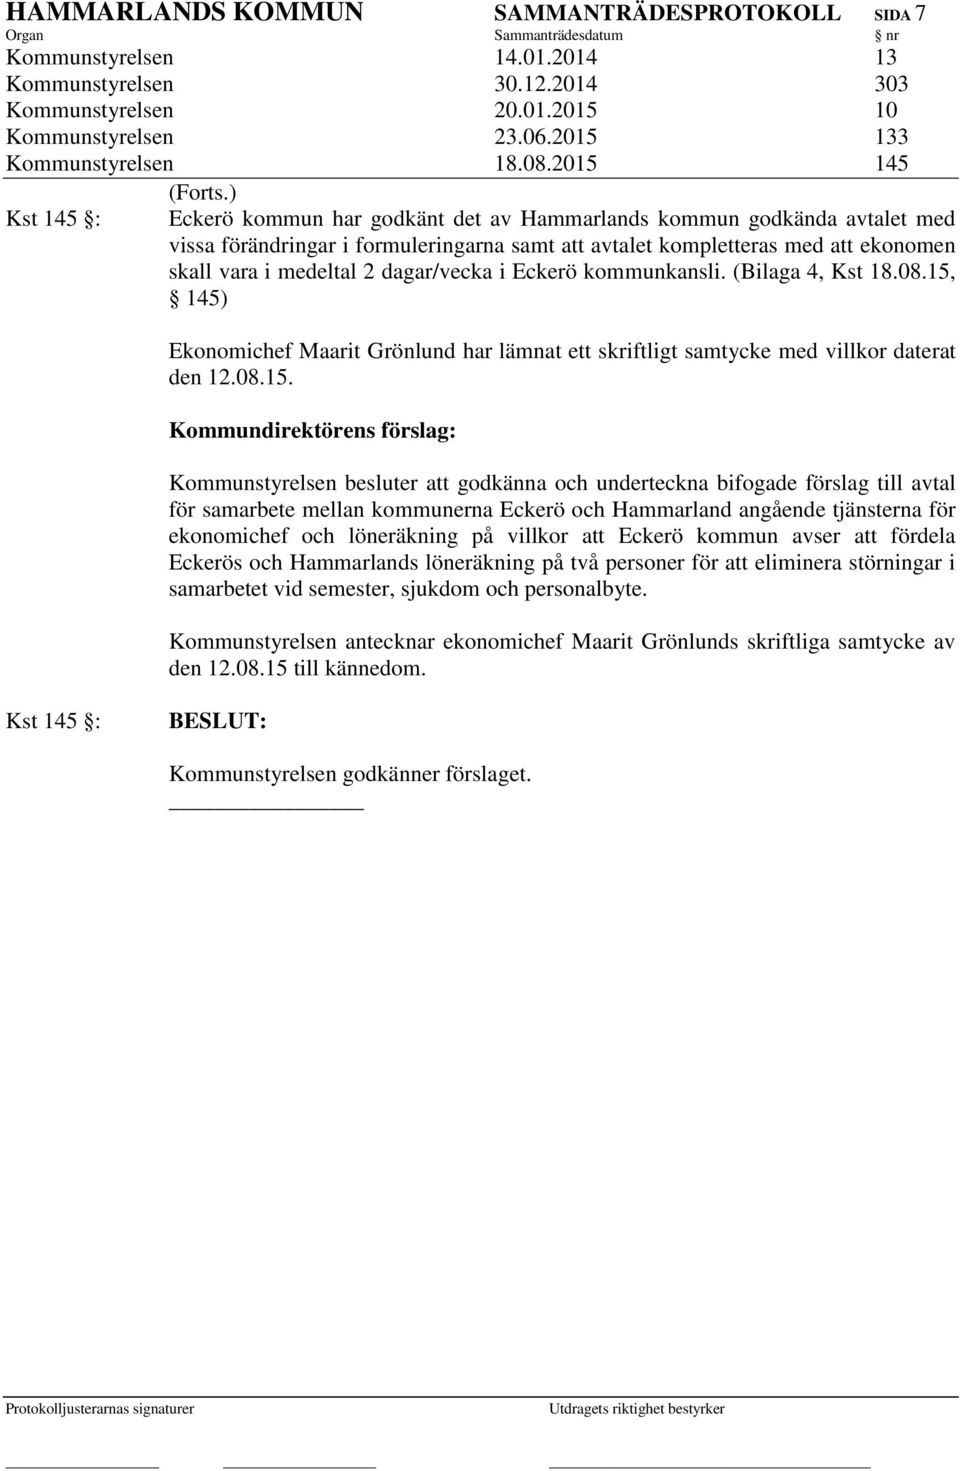 ) Kst 145 : Eckerö kommun har godkänt det av Hammarlands kommun godkända avtalet med vissa förändringar i formuleringarna samt att avtalet kompletteras med att ekonomen skall vara i medeltal 2